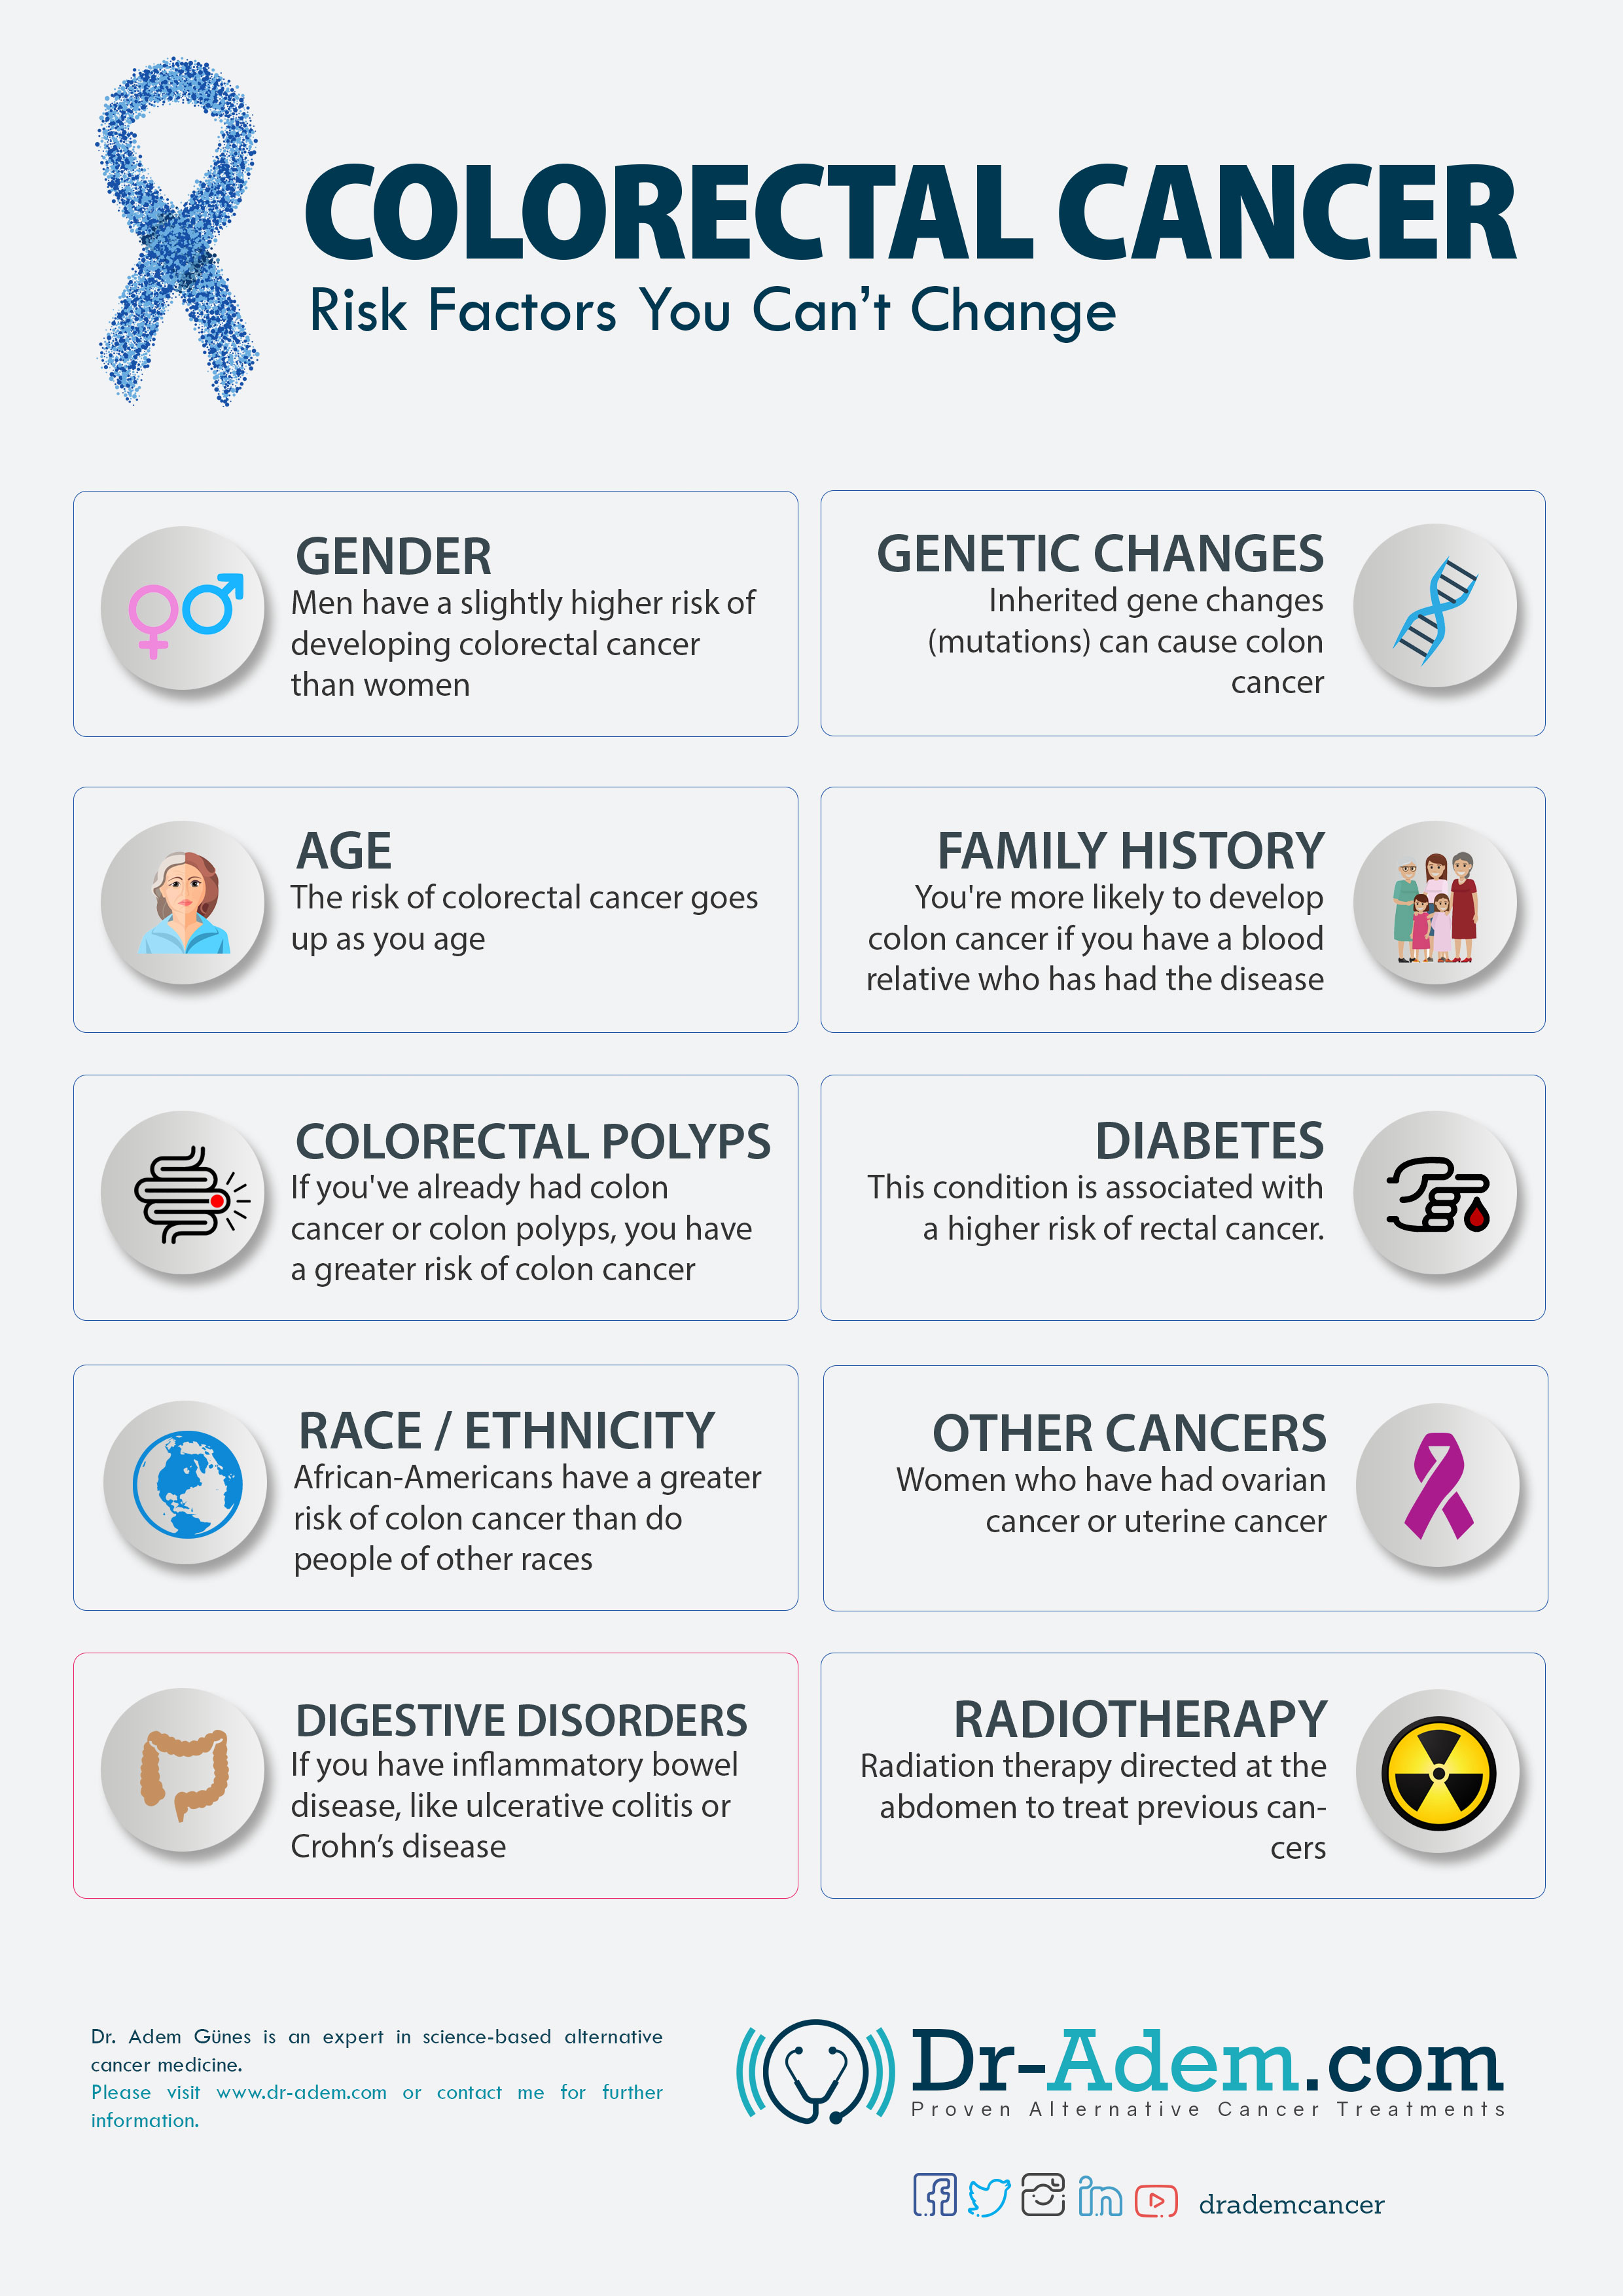 Major Risk Factors For Colorectal Cancer